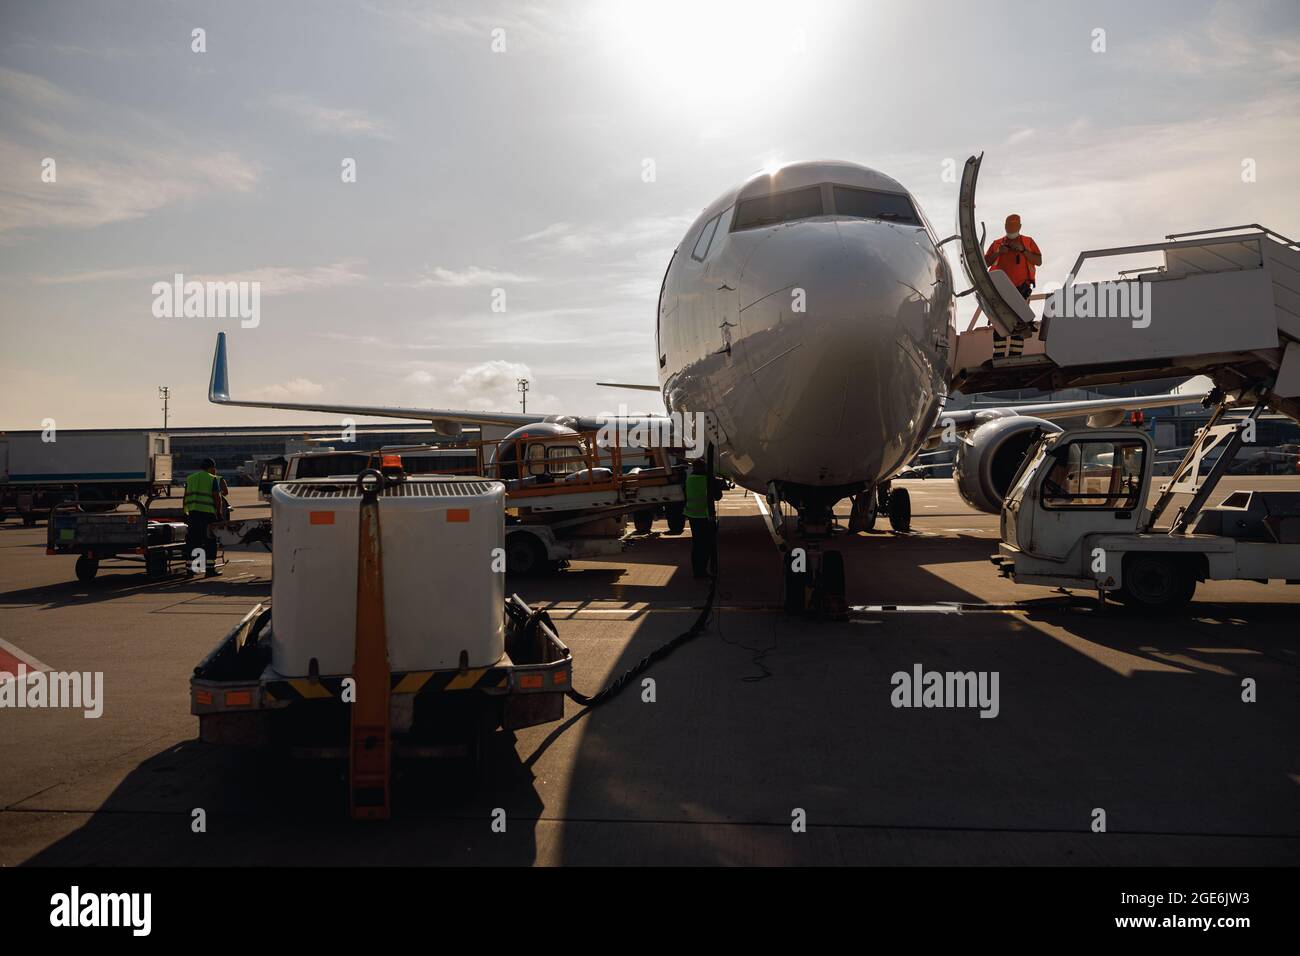 Les personnes se tenant près d'un grand avion moderne, le préparant pour l'embarquement dans le centre de l'aéroport en journée Banque D'Images